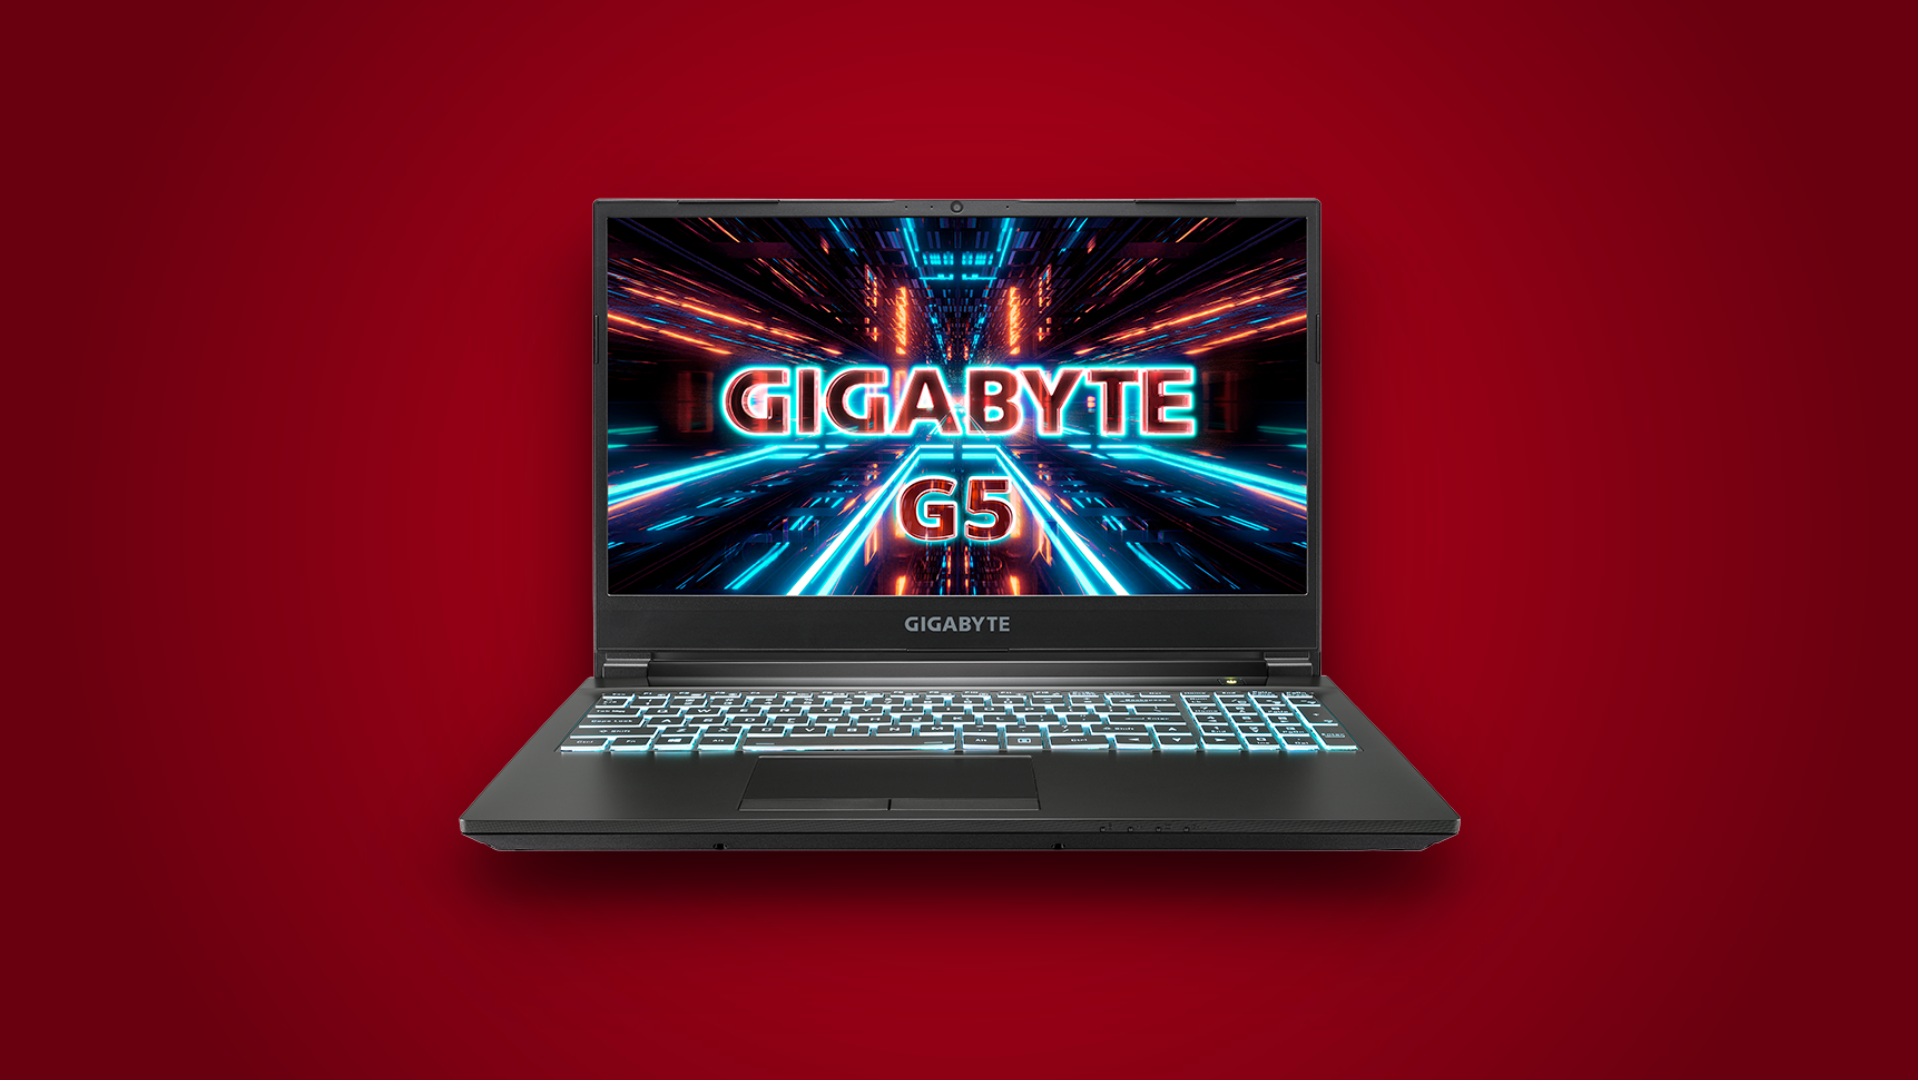 GIGABYTE G5 KD is now cheaper on Flipkart: Check deal